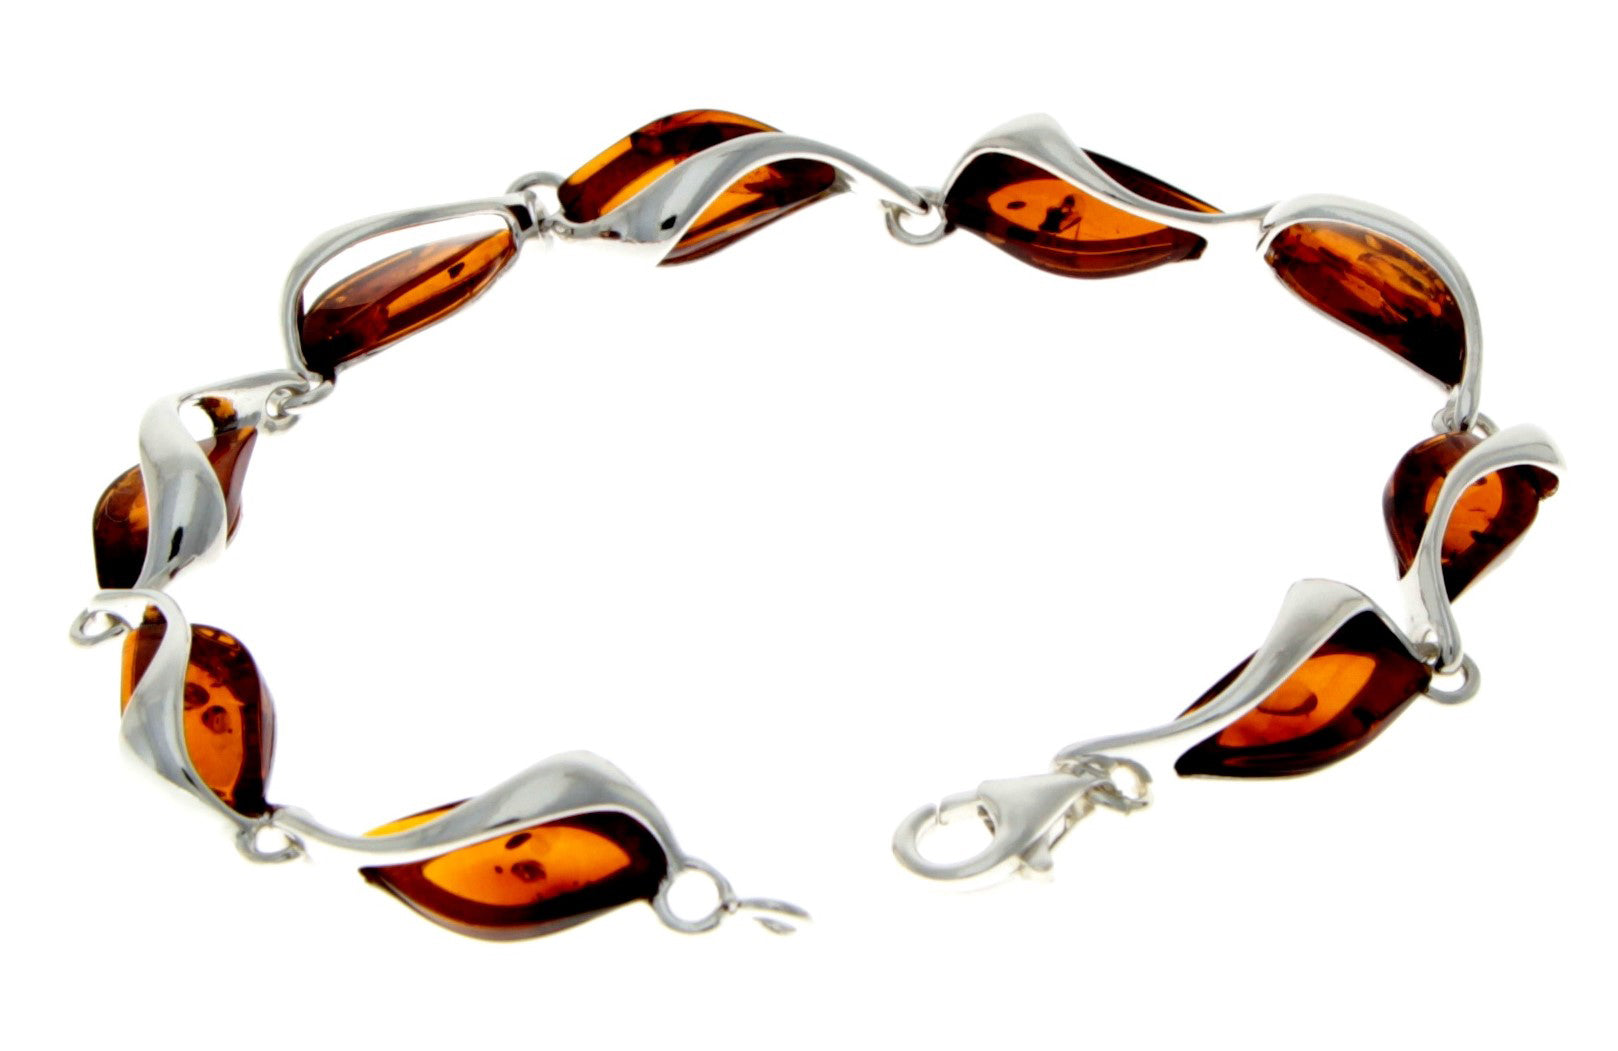 925 Sterling Silver & Cognac Baltic Amber Modern Link Bracelet - GL539